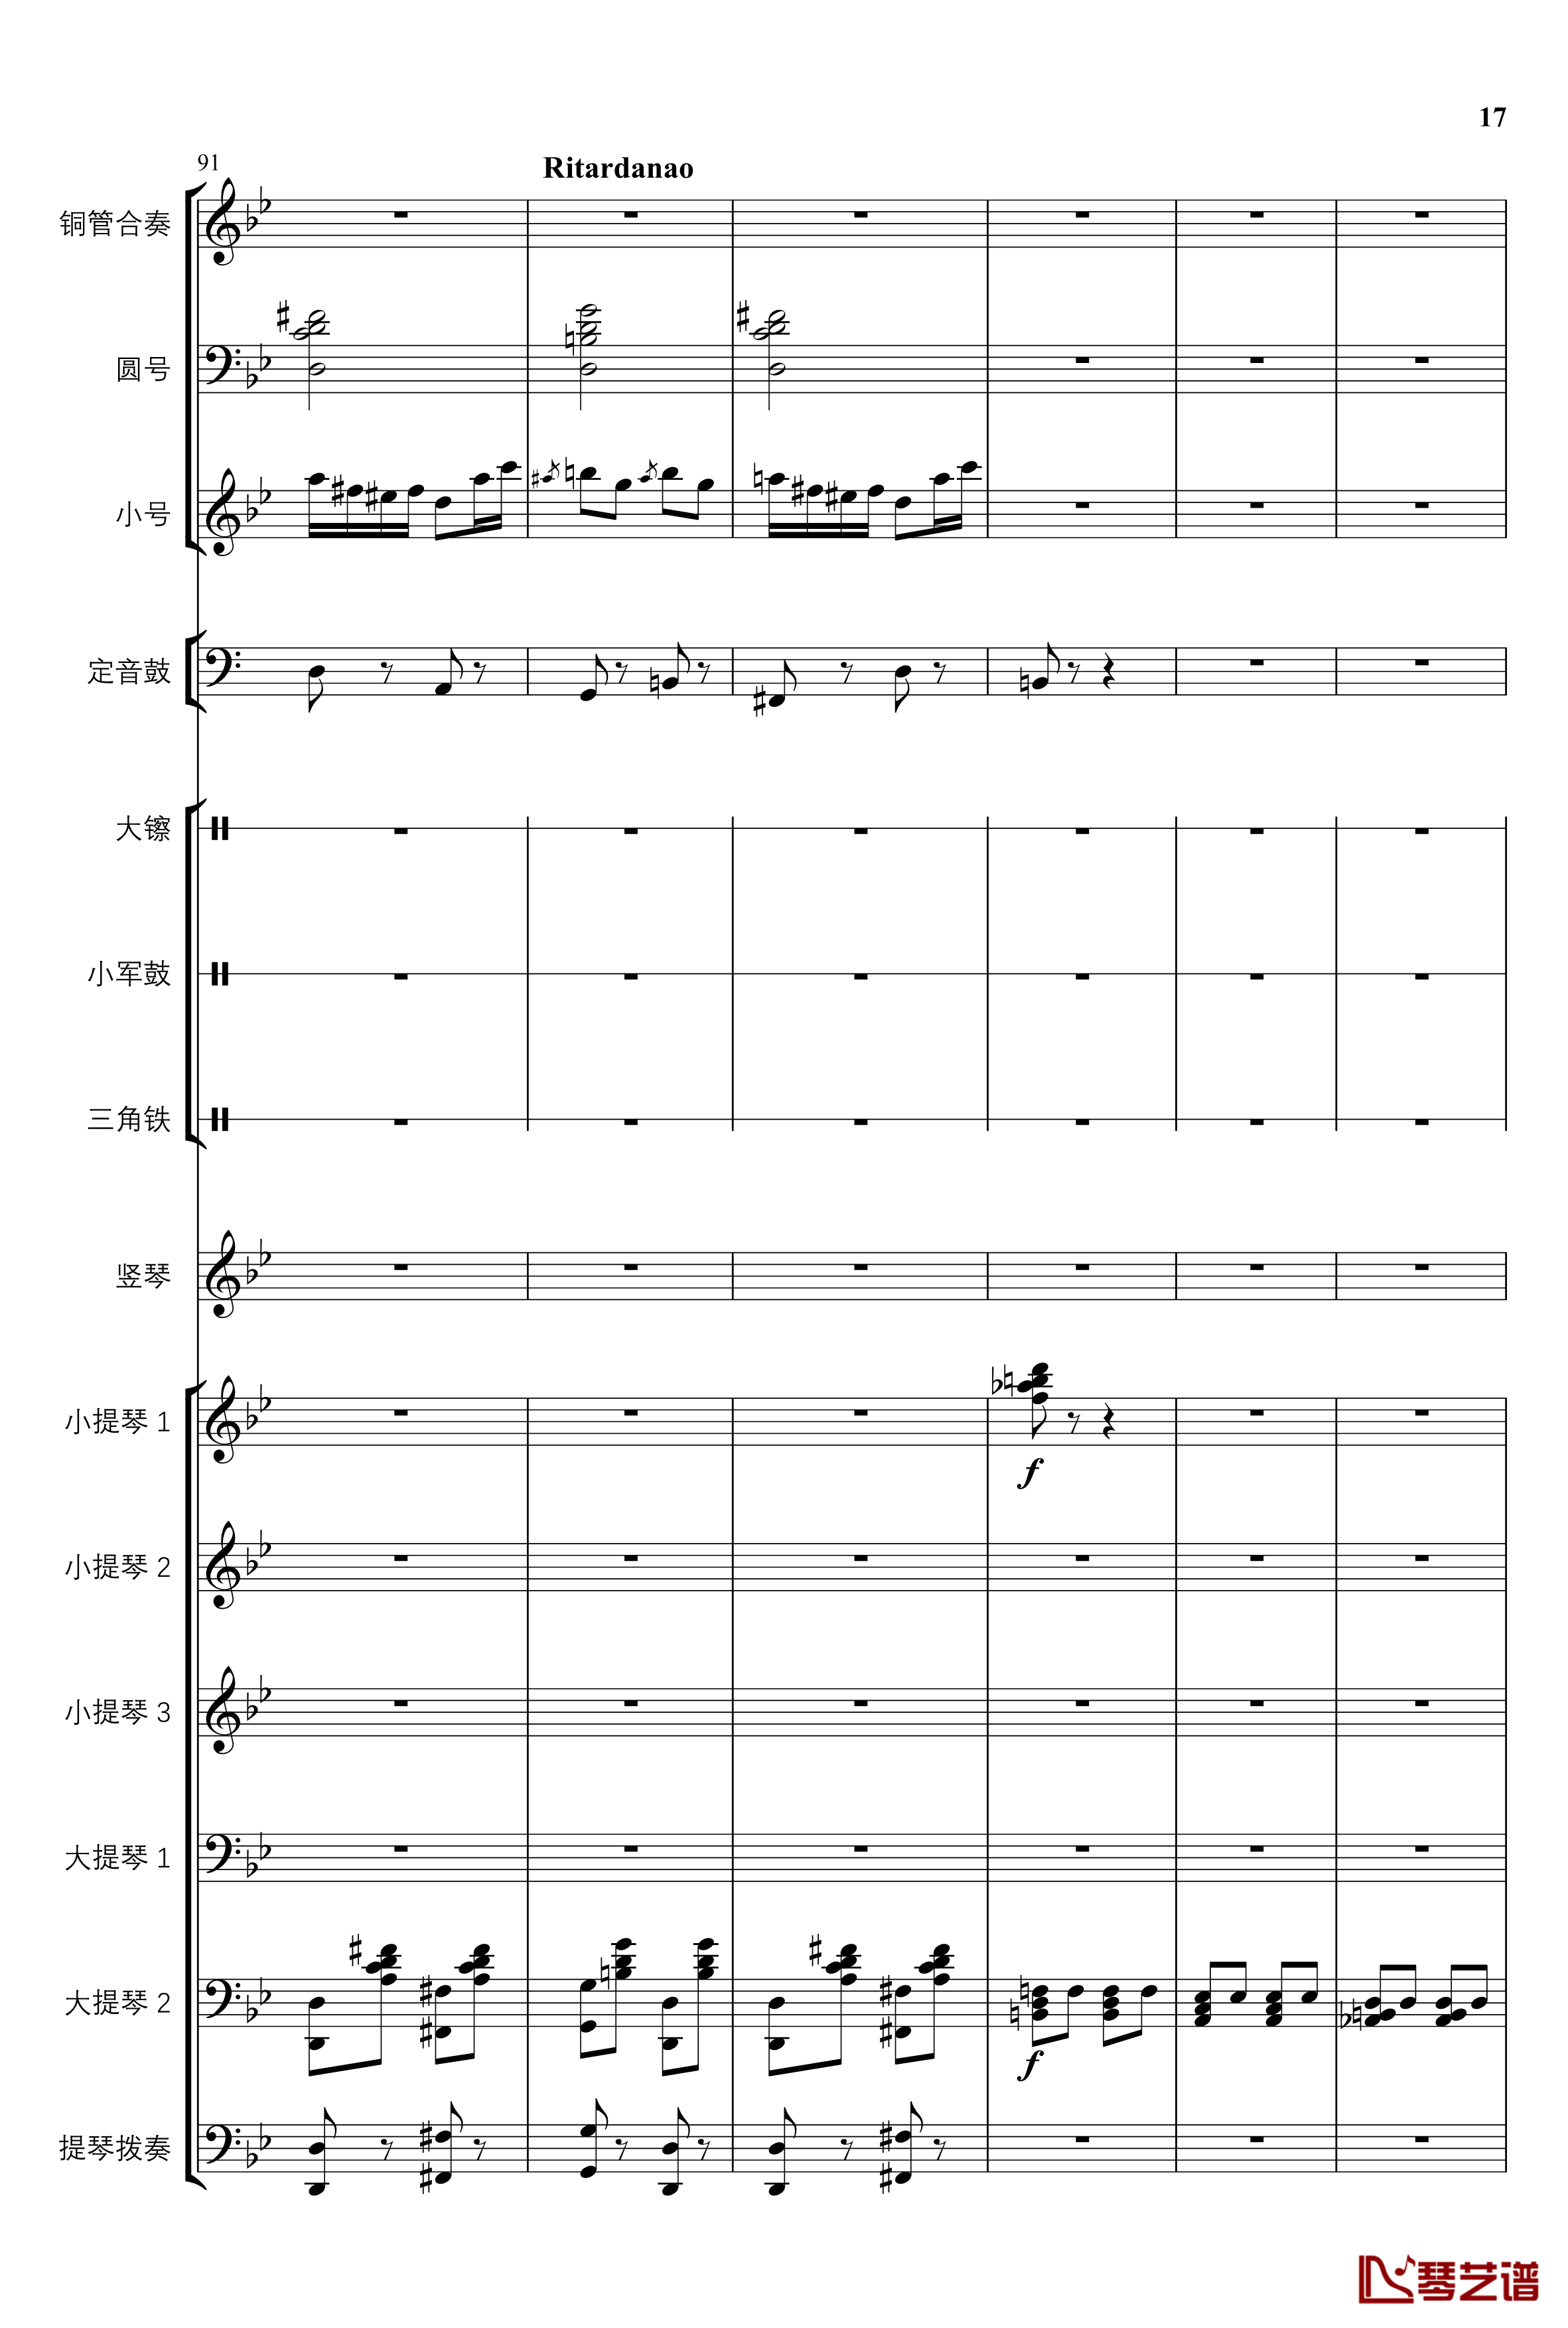 2013考试周的叙事曲钢琴谱-管弦乐重编曲版-江畔新绿17